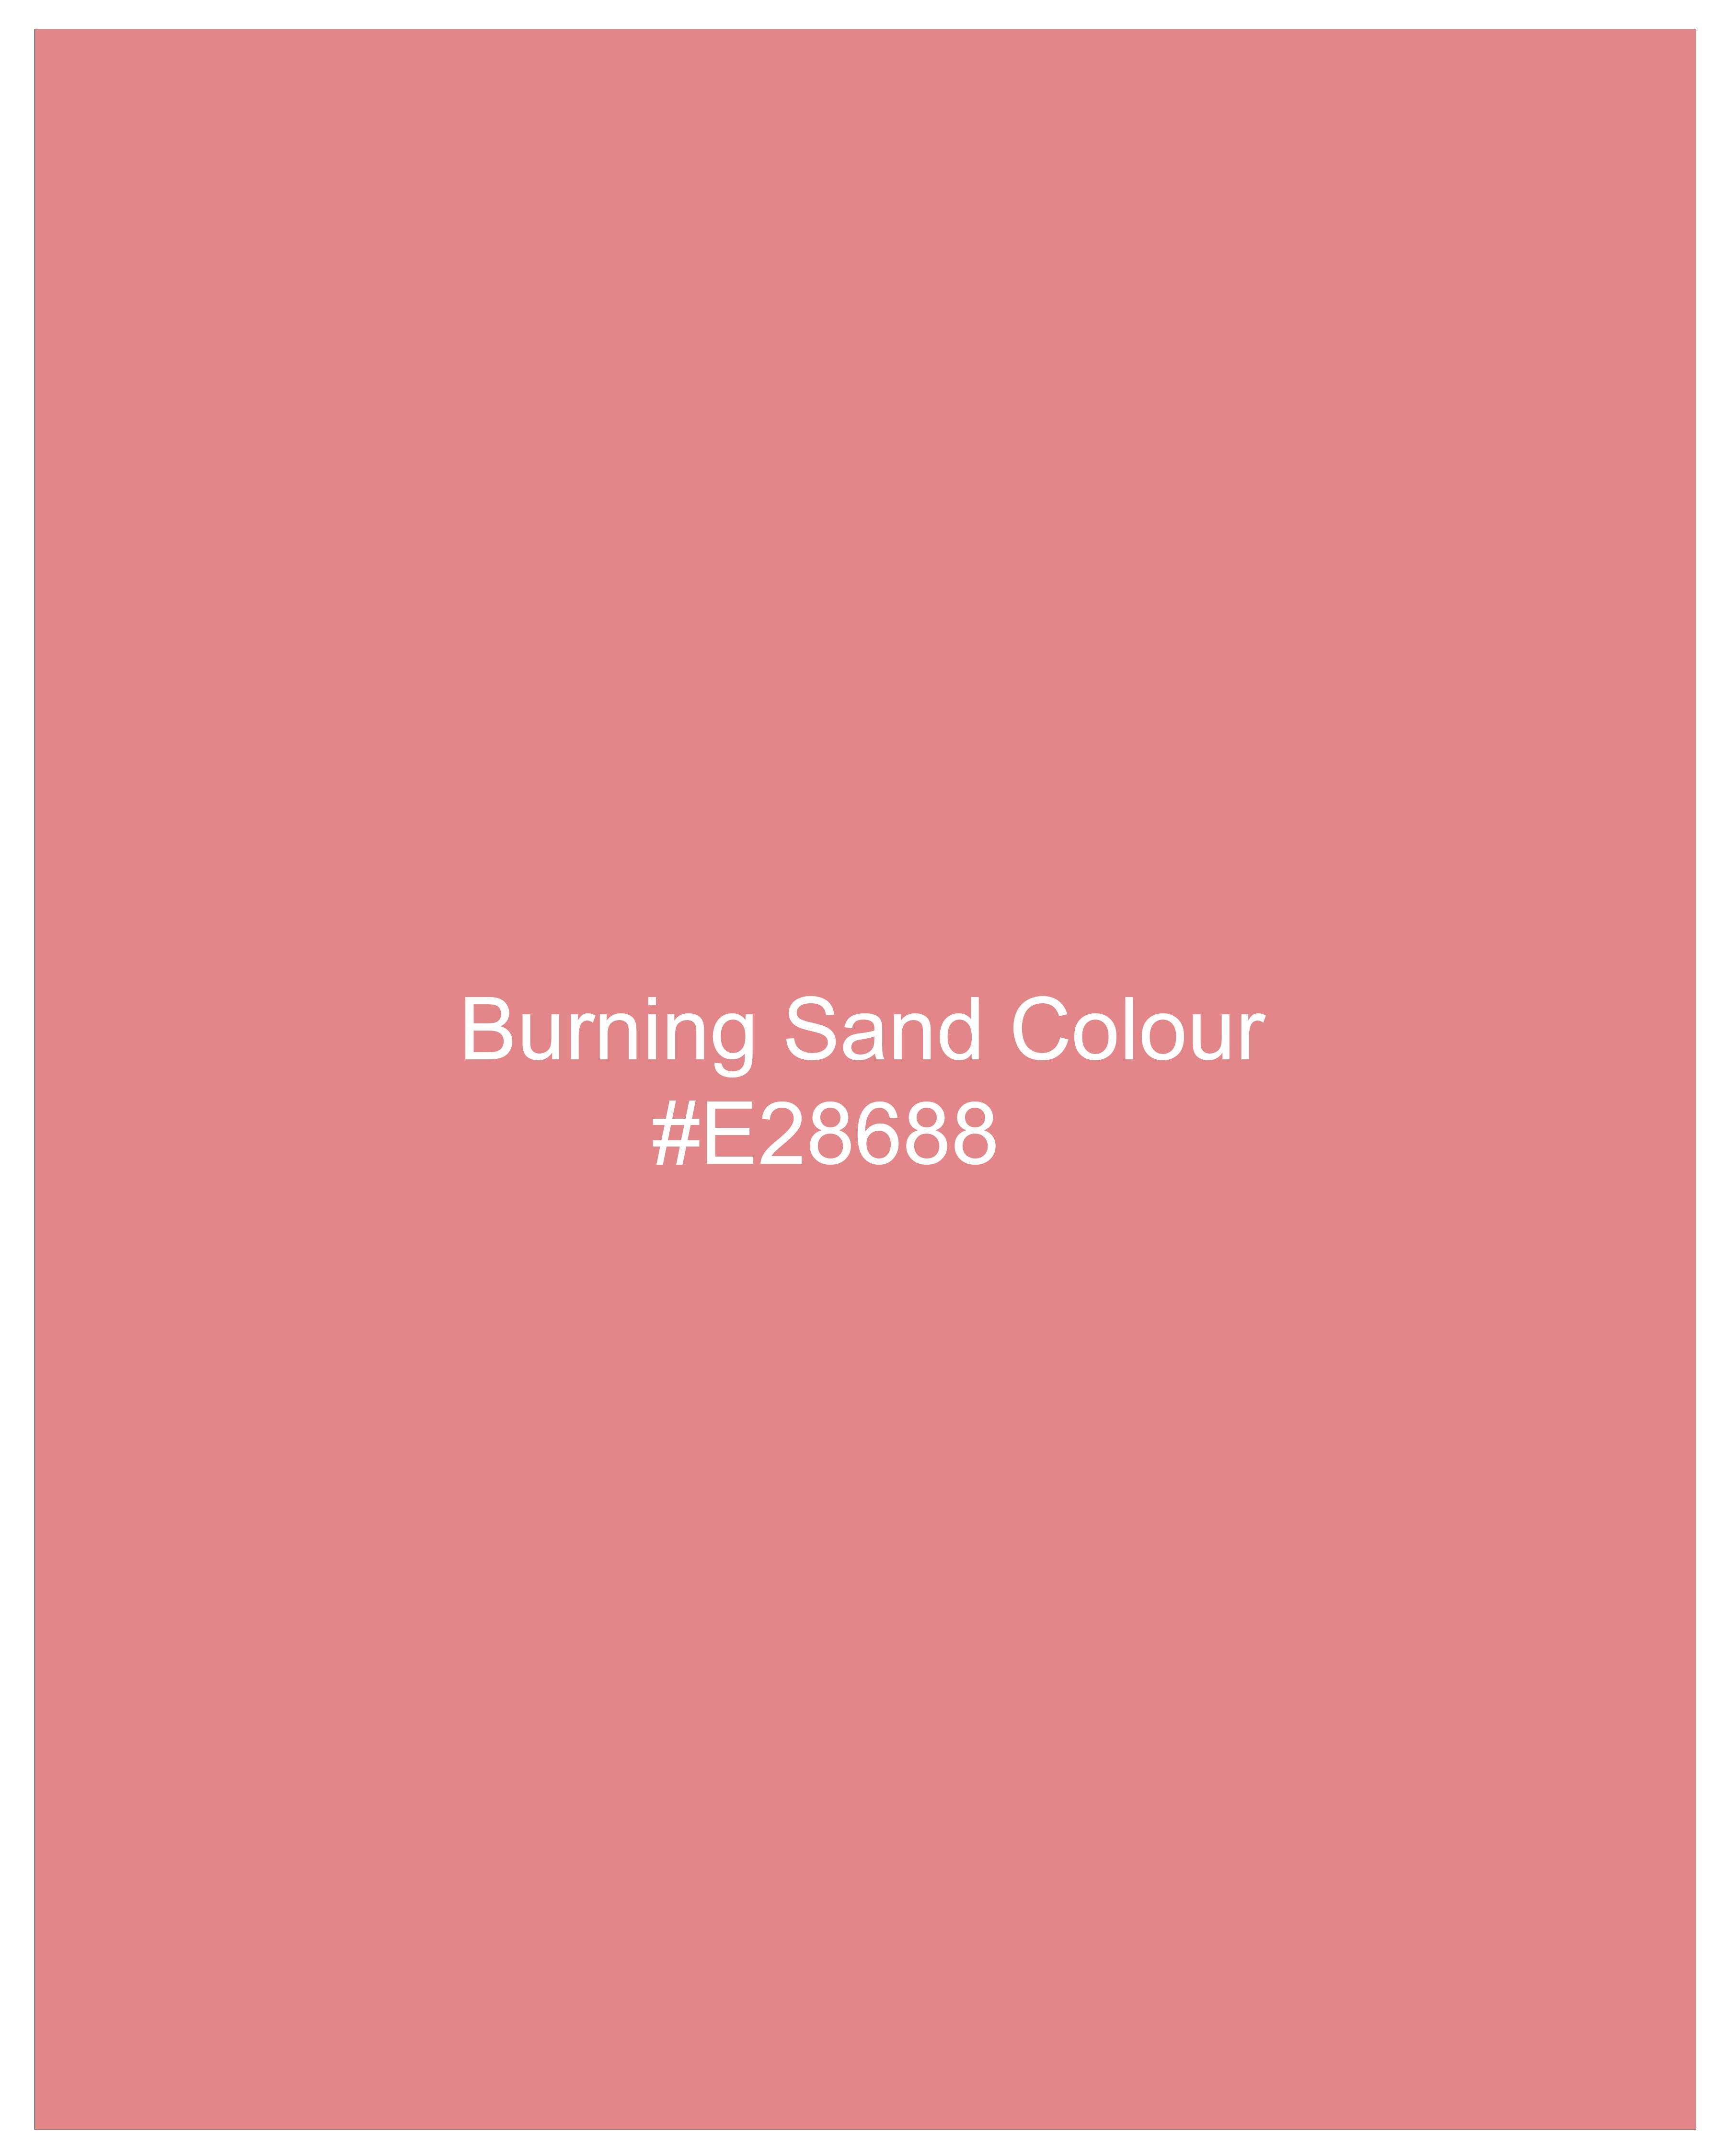 Burning Sand Pink Luxurious Linen Shirt 9846-M-38, 9846-M-H-38, 9846-M-39, 9846-M-H-39, 9846-M-40, 9846-M-H-40, 9846-M-42, 9846-M-H-42, 9846-M-44, 9846-M-H-44, 9846-M-46, 9846-M-H-46, 9846-M-48, 9846-M-H-48, 9846-M-50, 9846-M-H-50, 9846-M-52, 9846-M-H-52